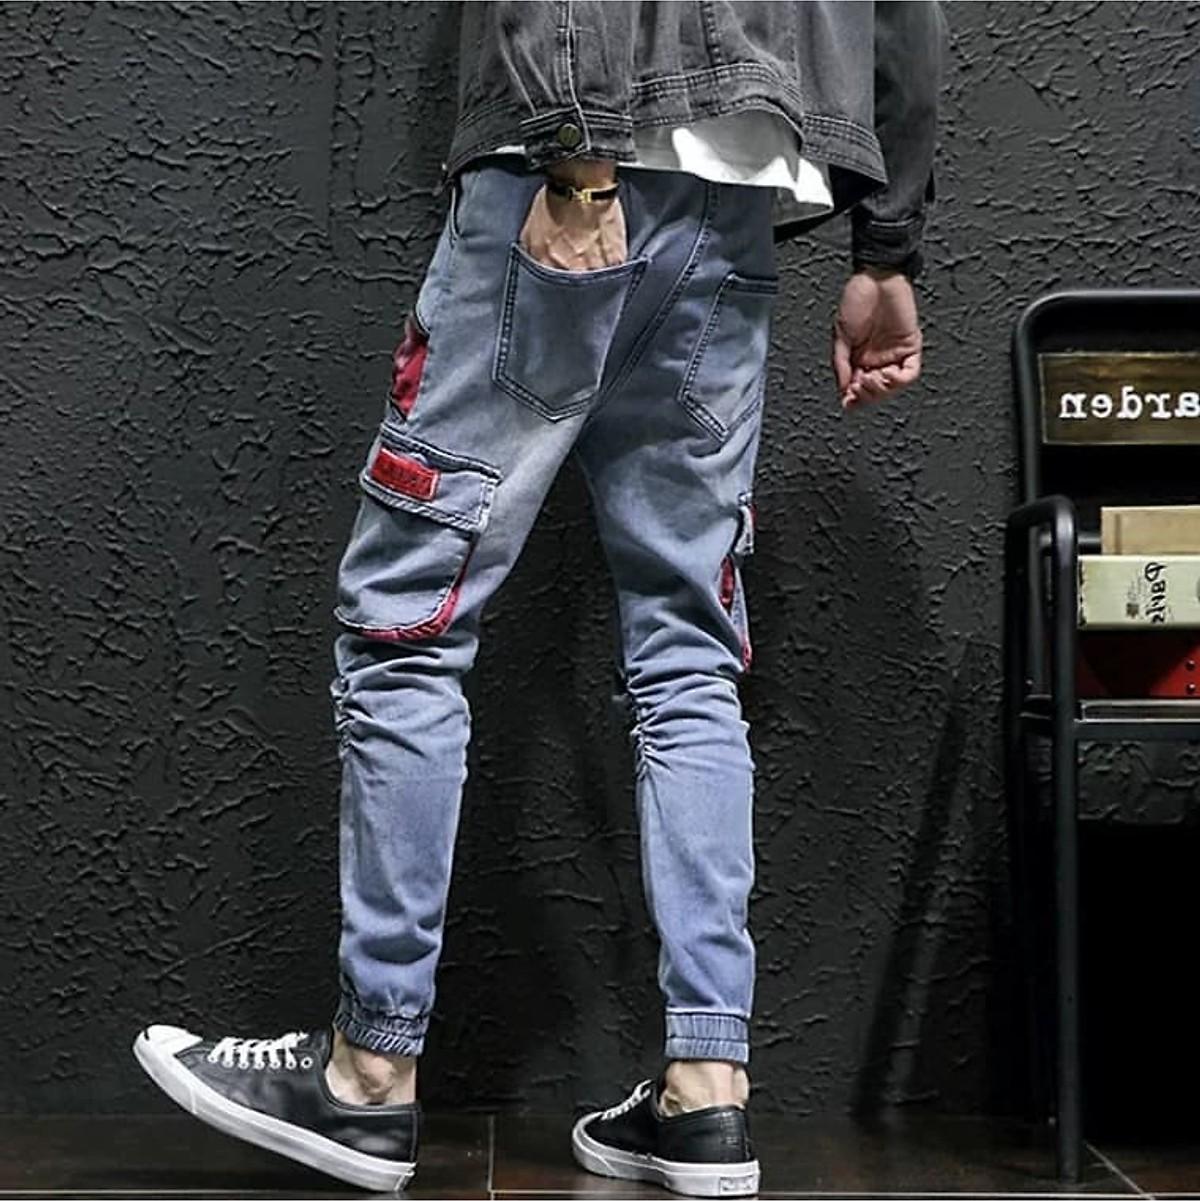 Quần Jogger Jean Nam túi hộp cá tính năng động chất vải Jean cao cấp co giãn nhẹ hợp với xu hướng thời trang hiện nay